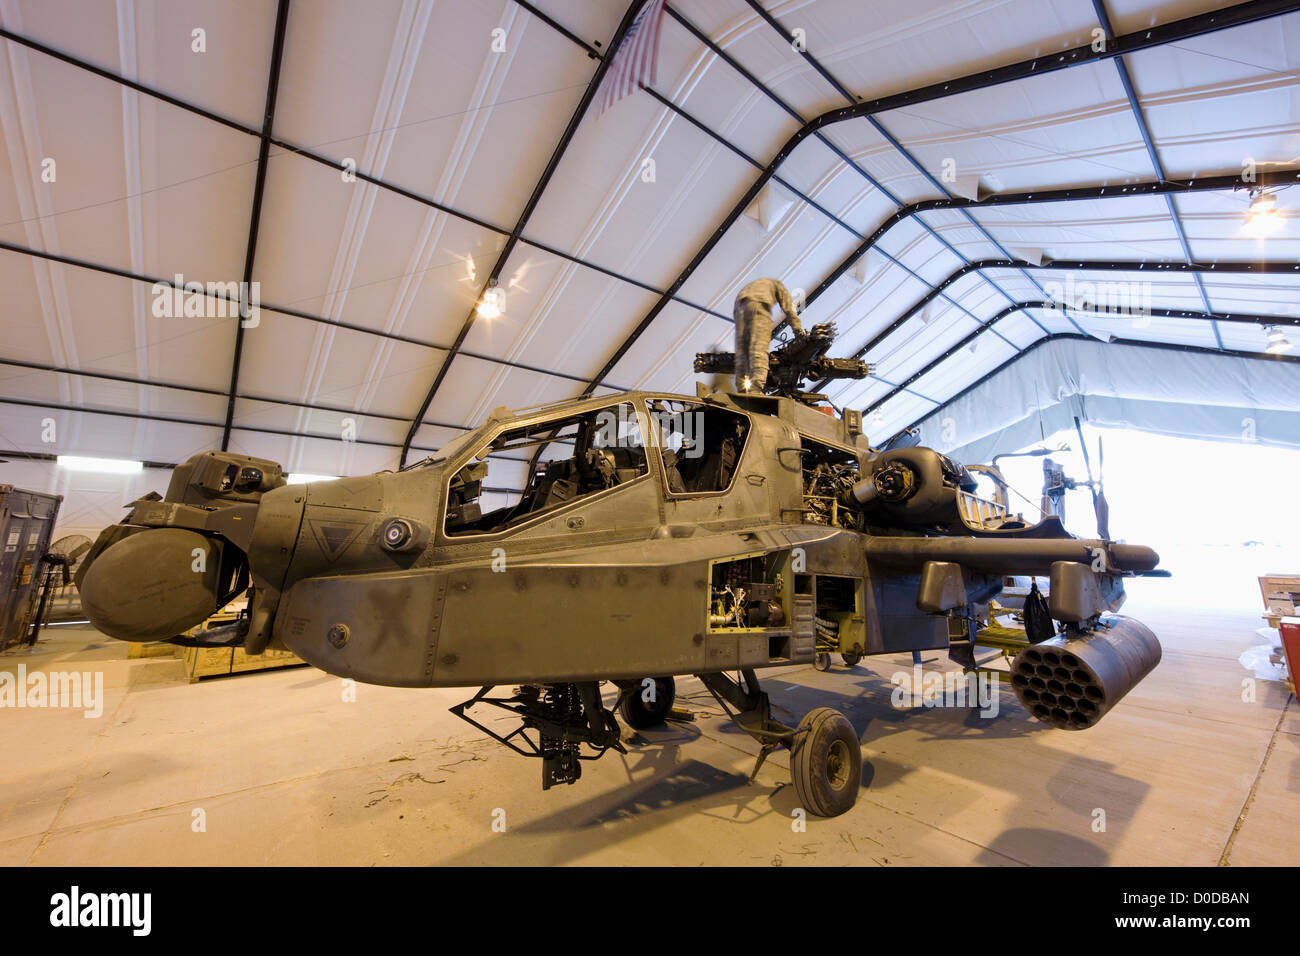 AH-64 Apache helicóptero artillado en mantenimiento Foto de stock